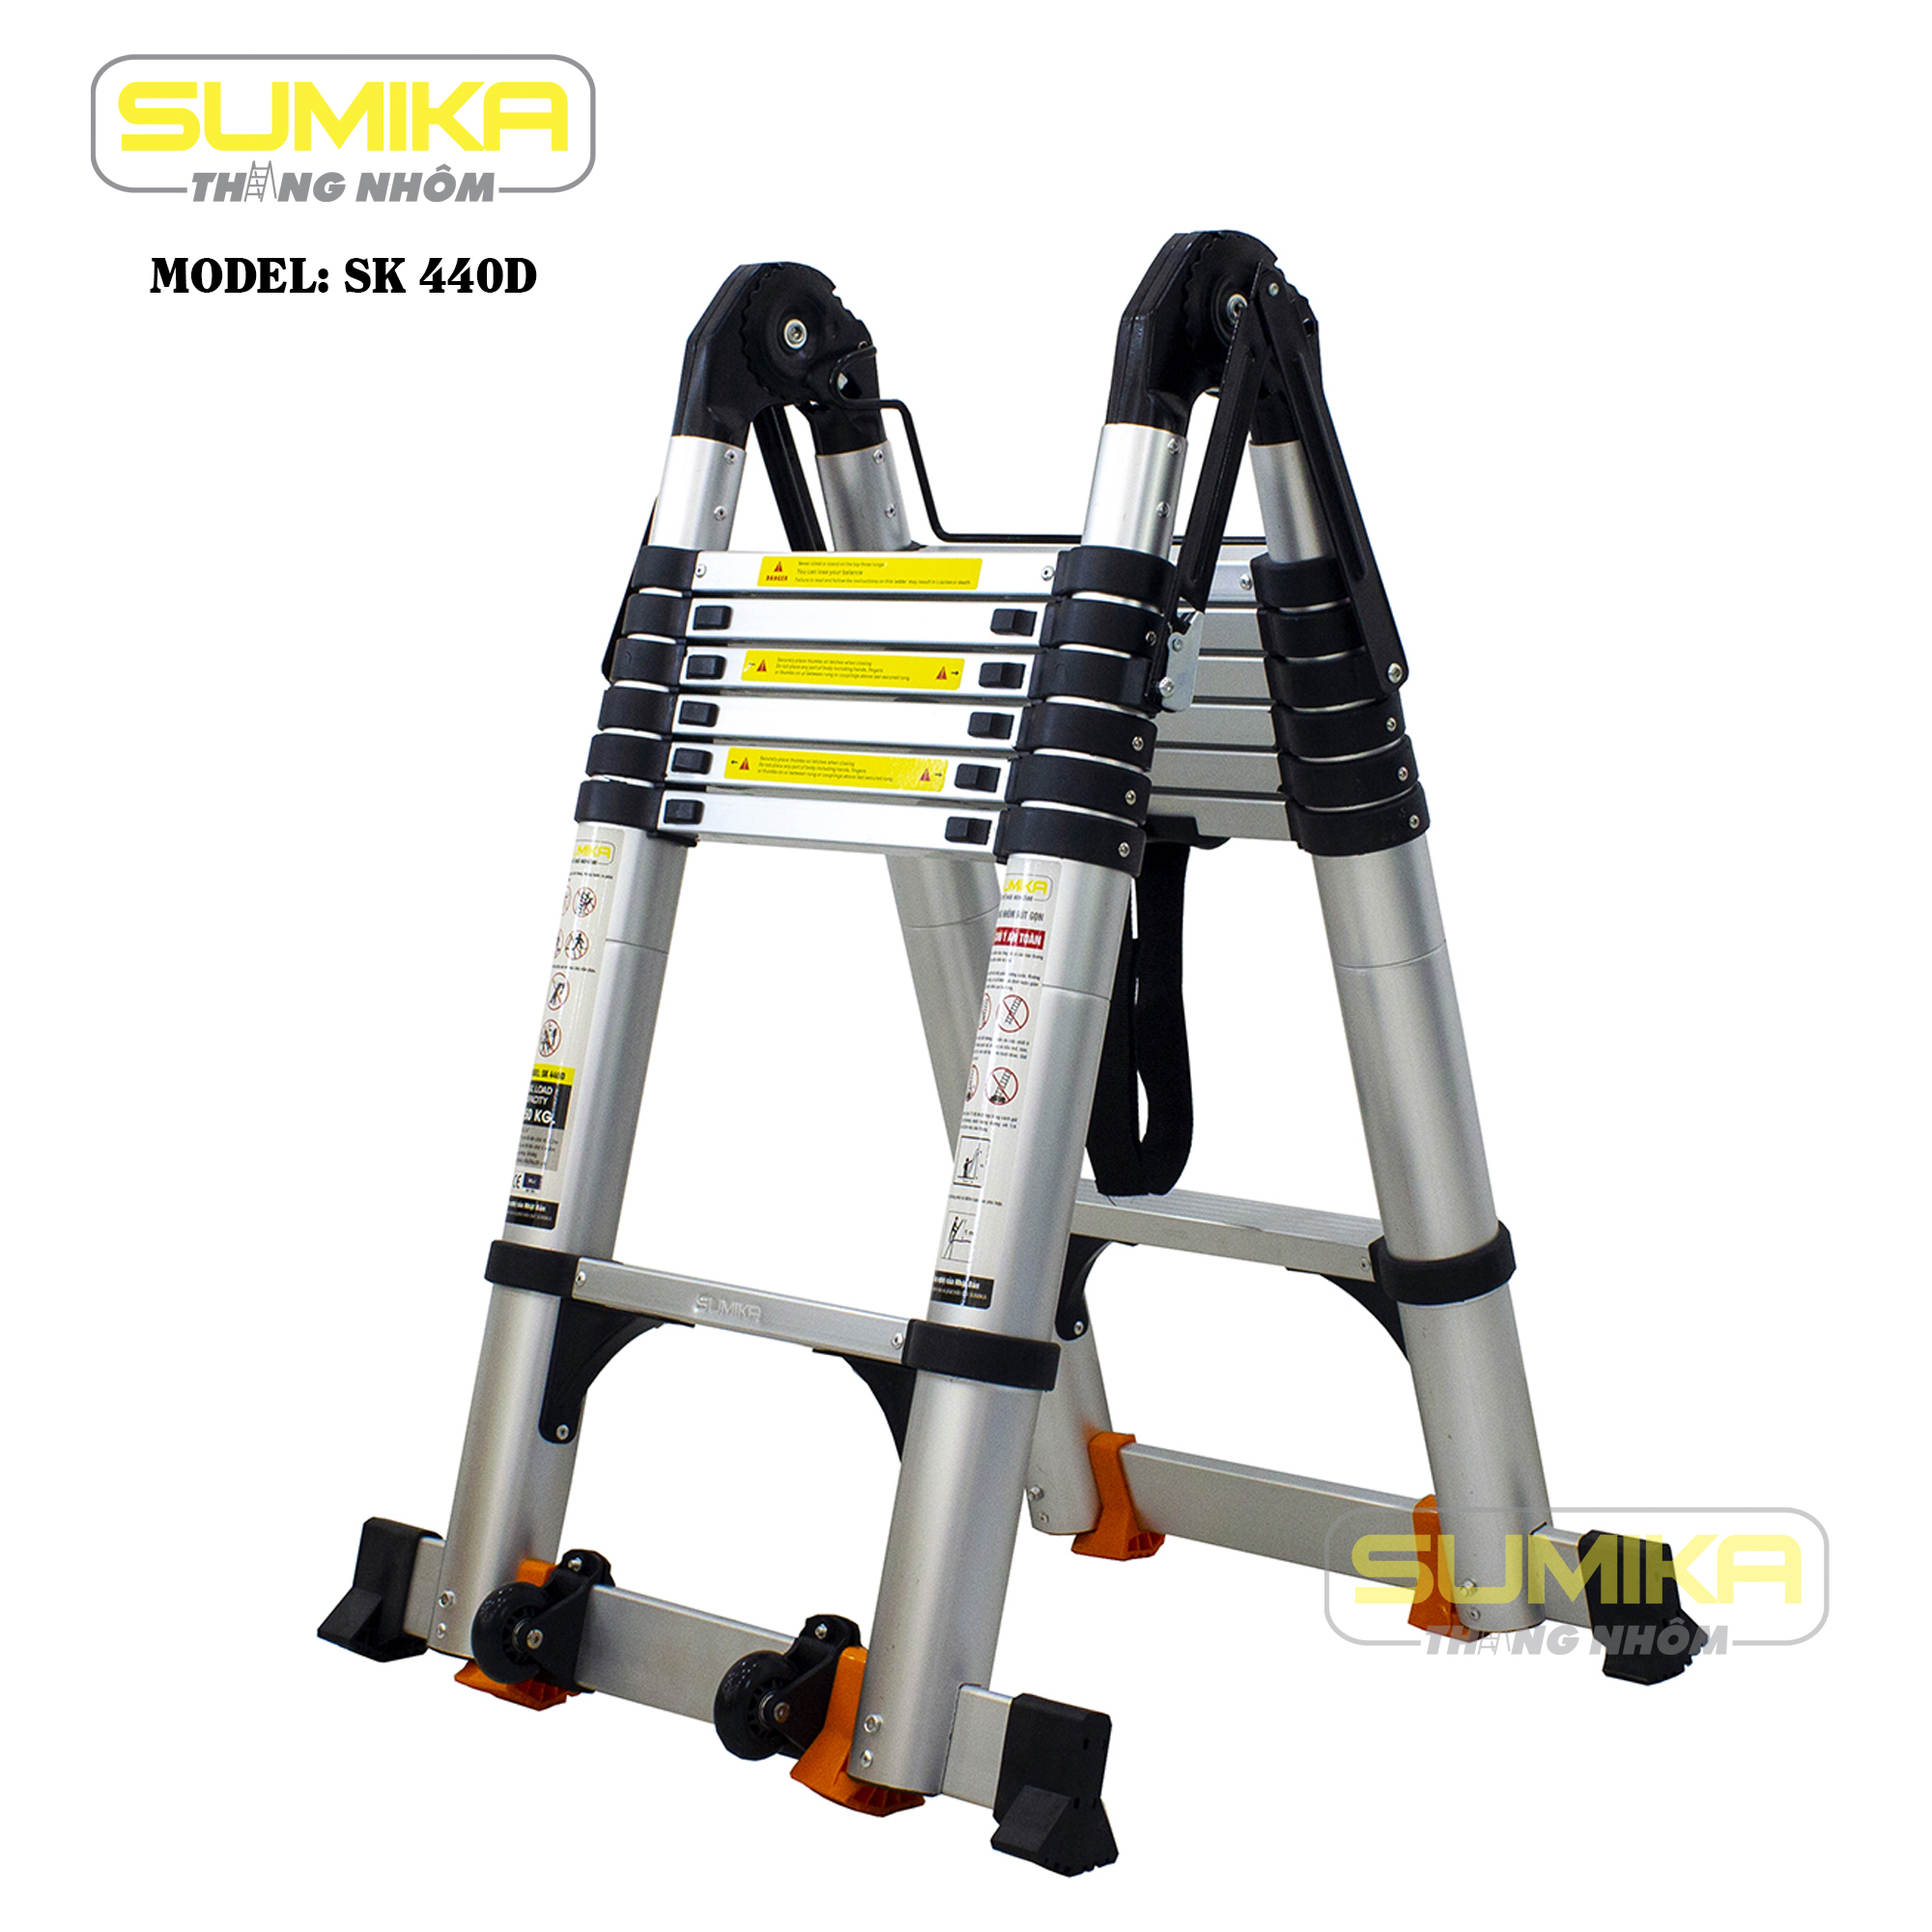 So sánh thang nhôm Sumika SK440D với các sản phẩm khác